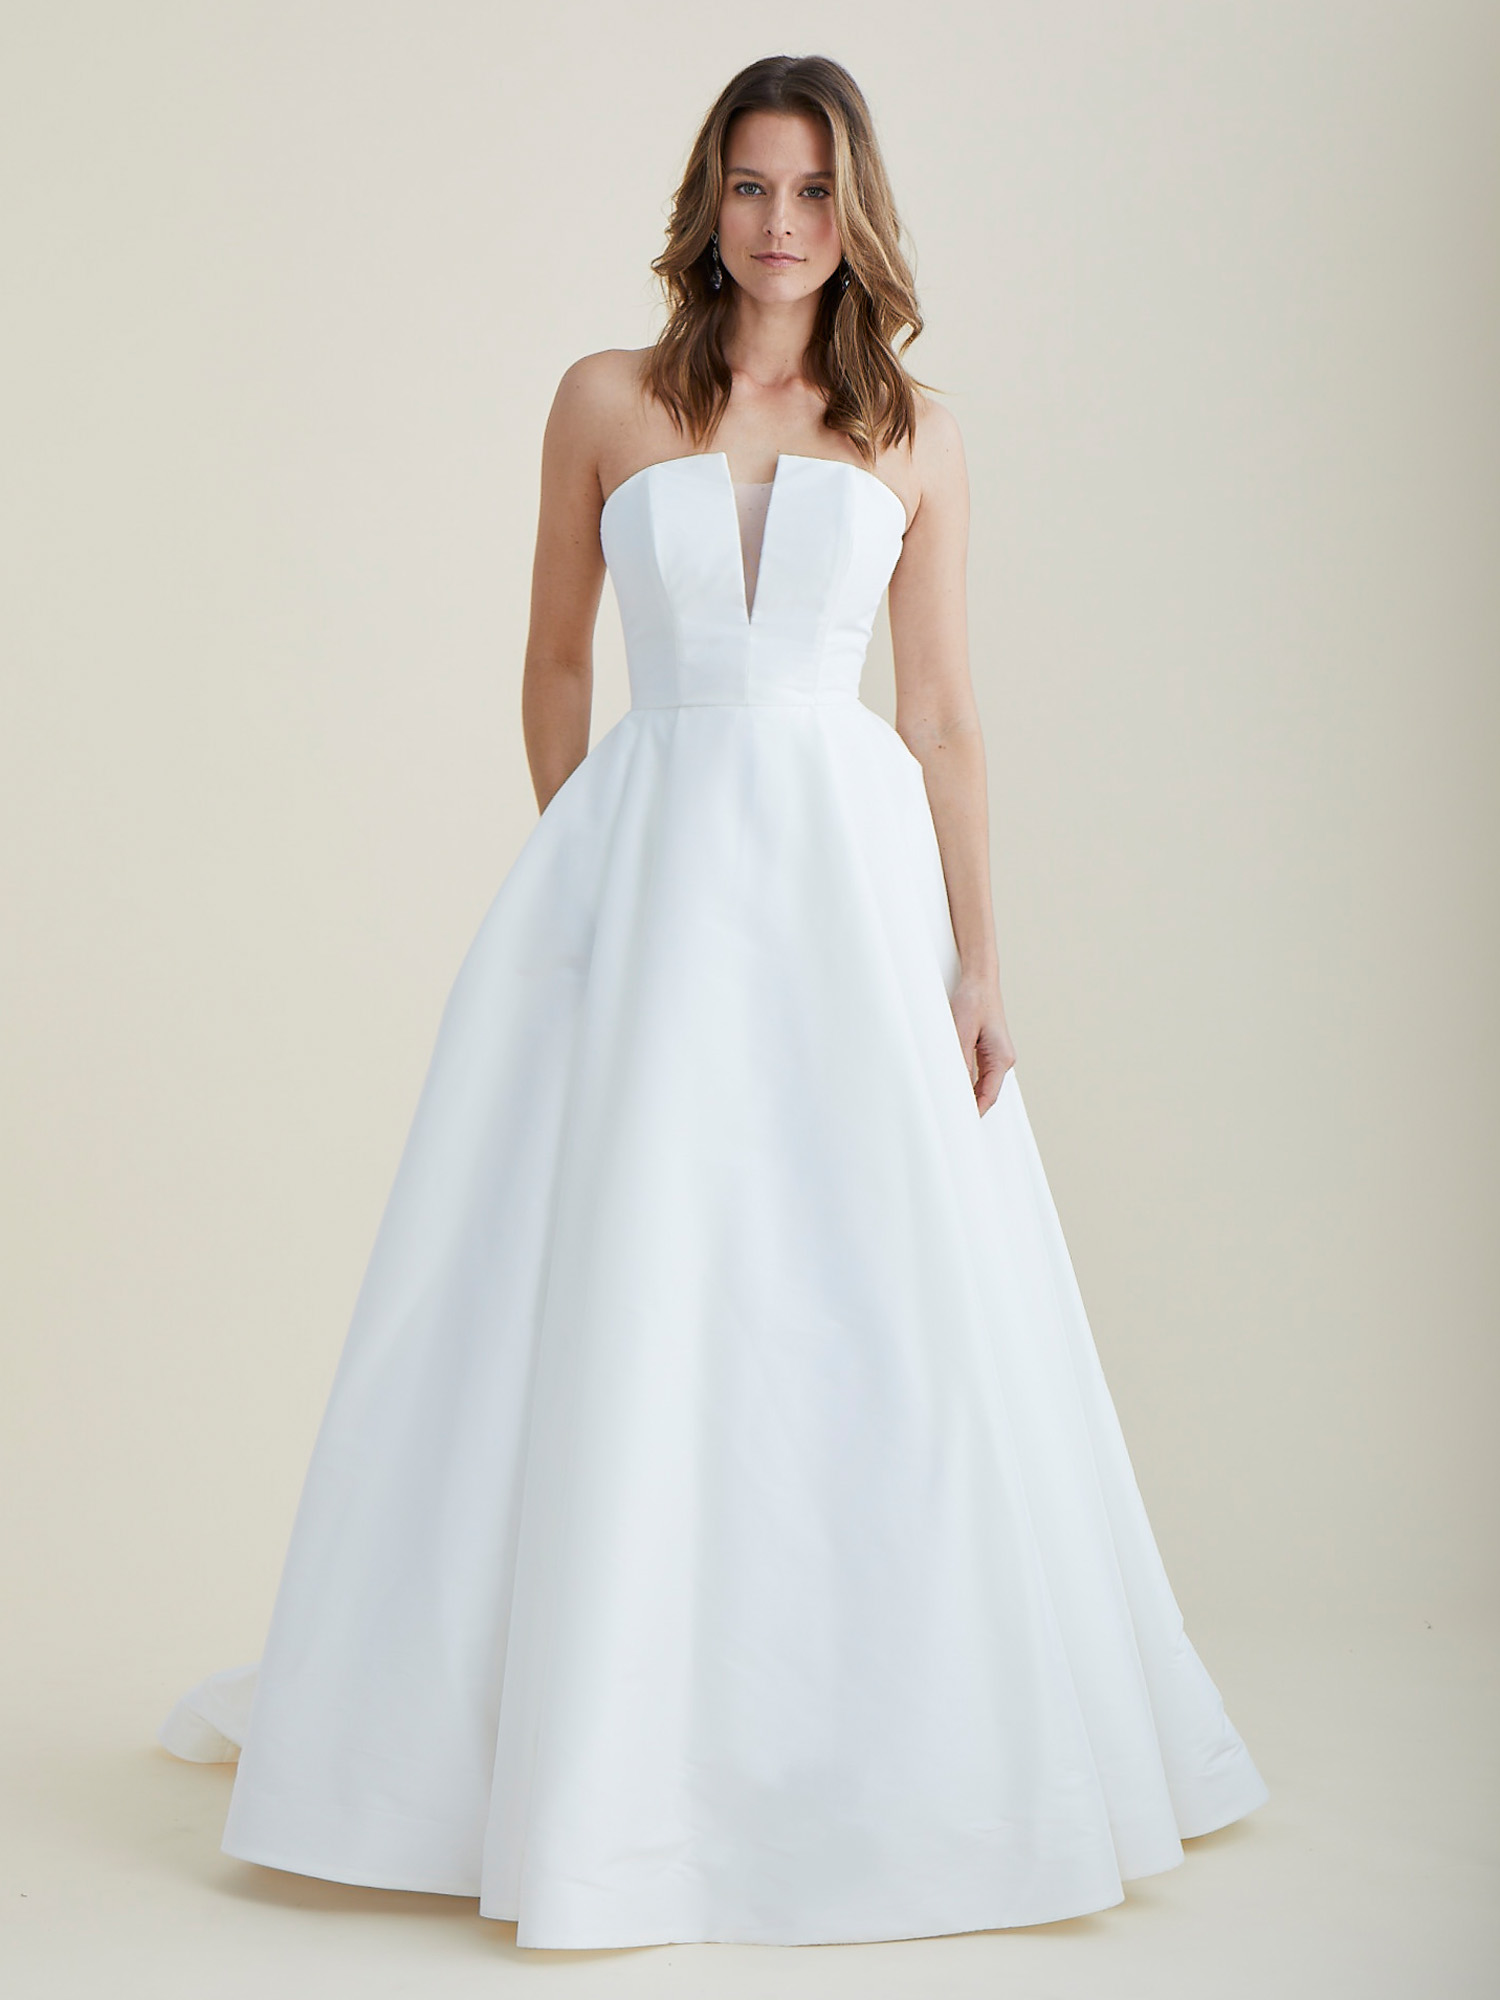 Dream Wedding Gown by Astrid & Mercedes, Lea-Ann Belter Bridal